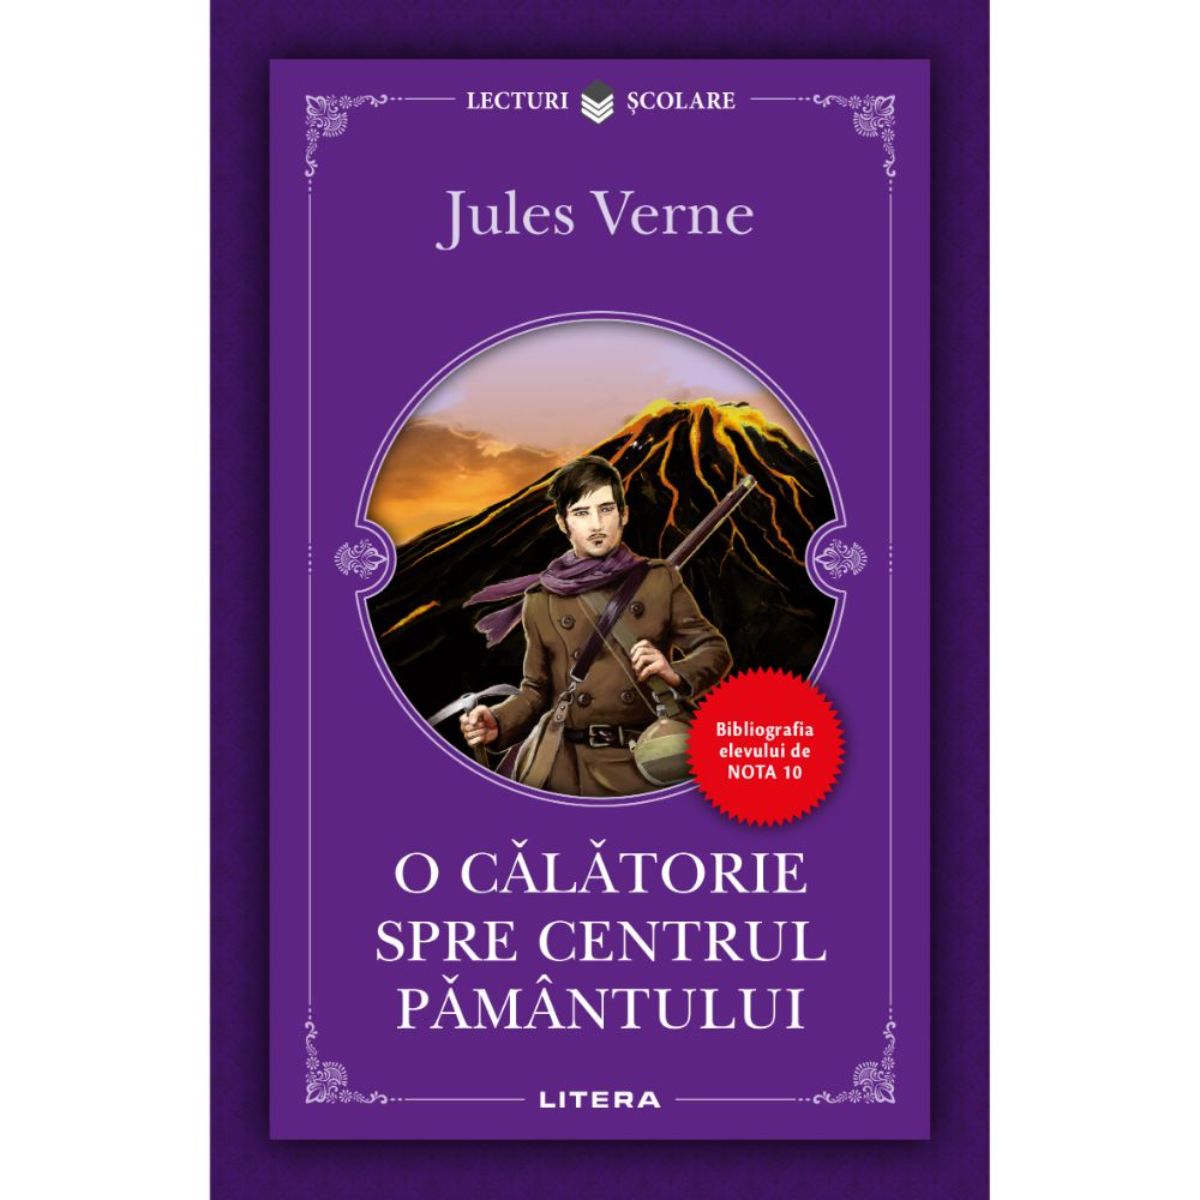 O calatorie spre centrul pamantului, Jules Verne, Editie noua Calatorie